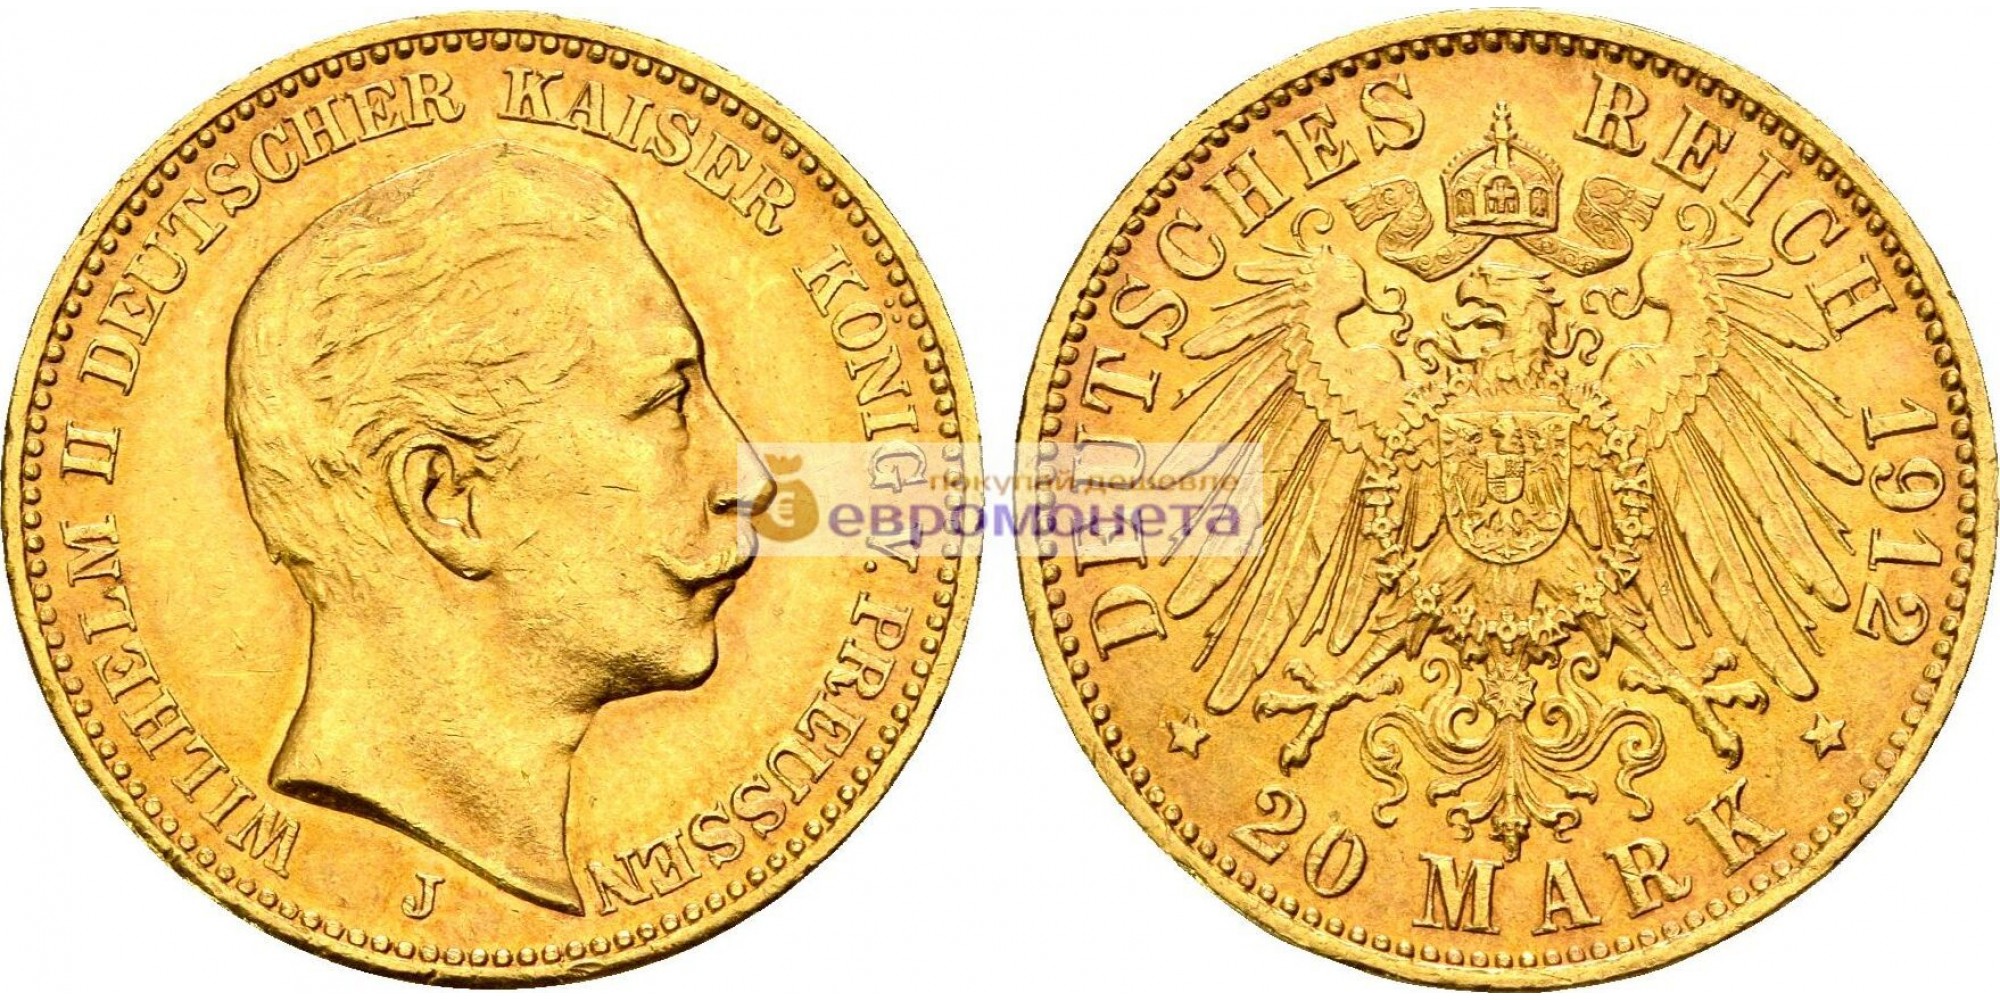 Германская империя Пруссия 20 марок 1912 год "J" . Золото. Тираж: 502 530 штук